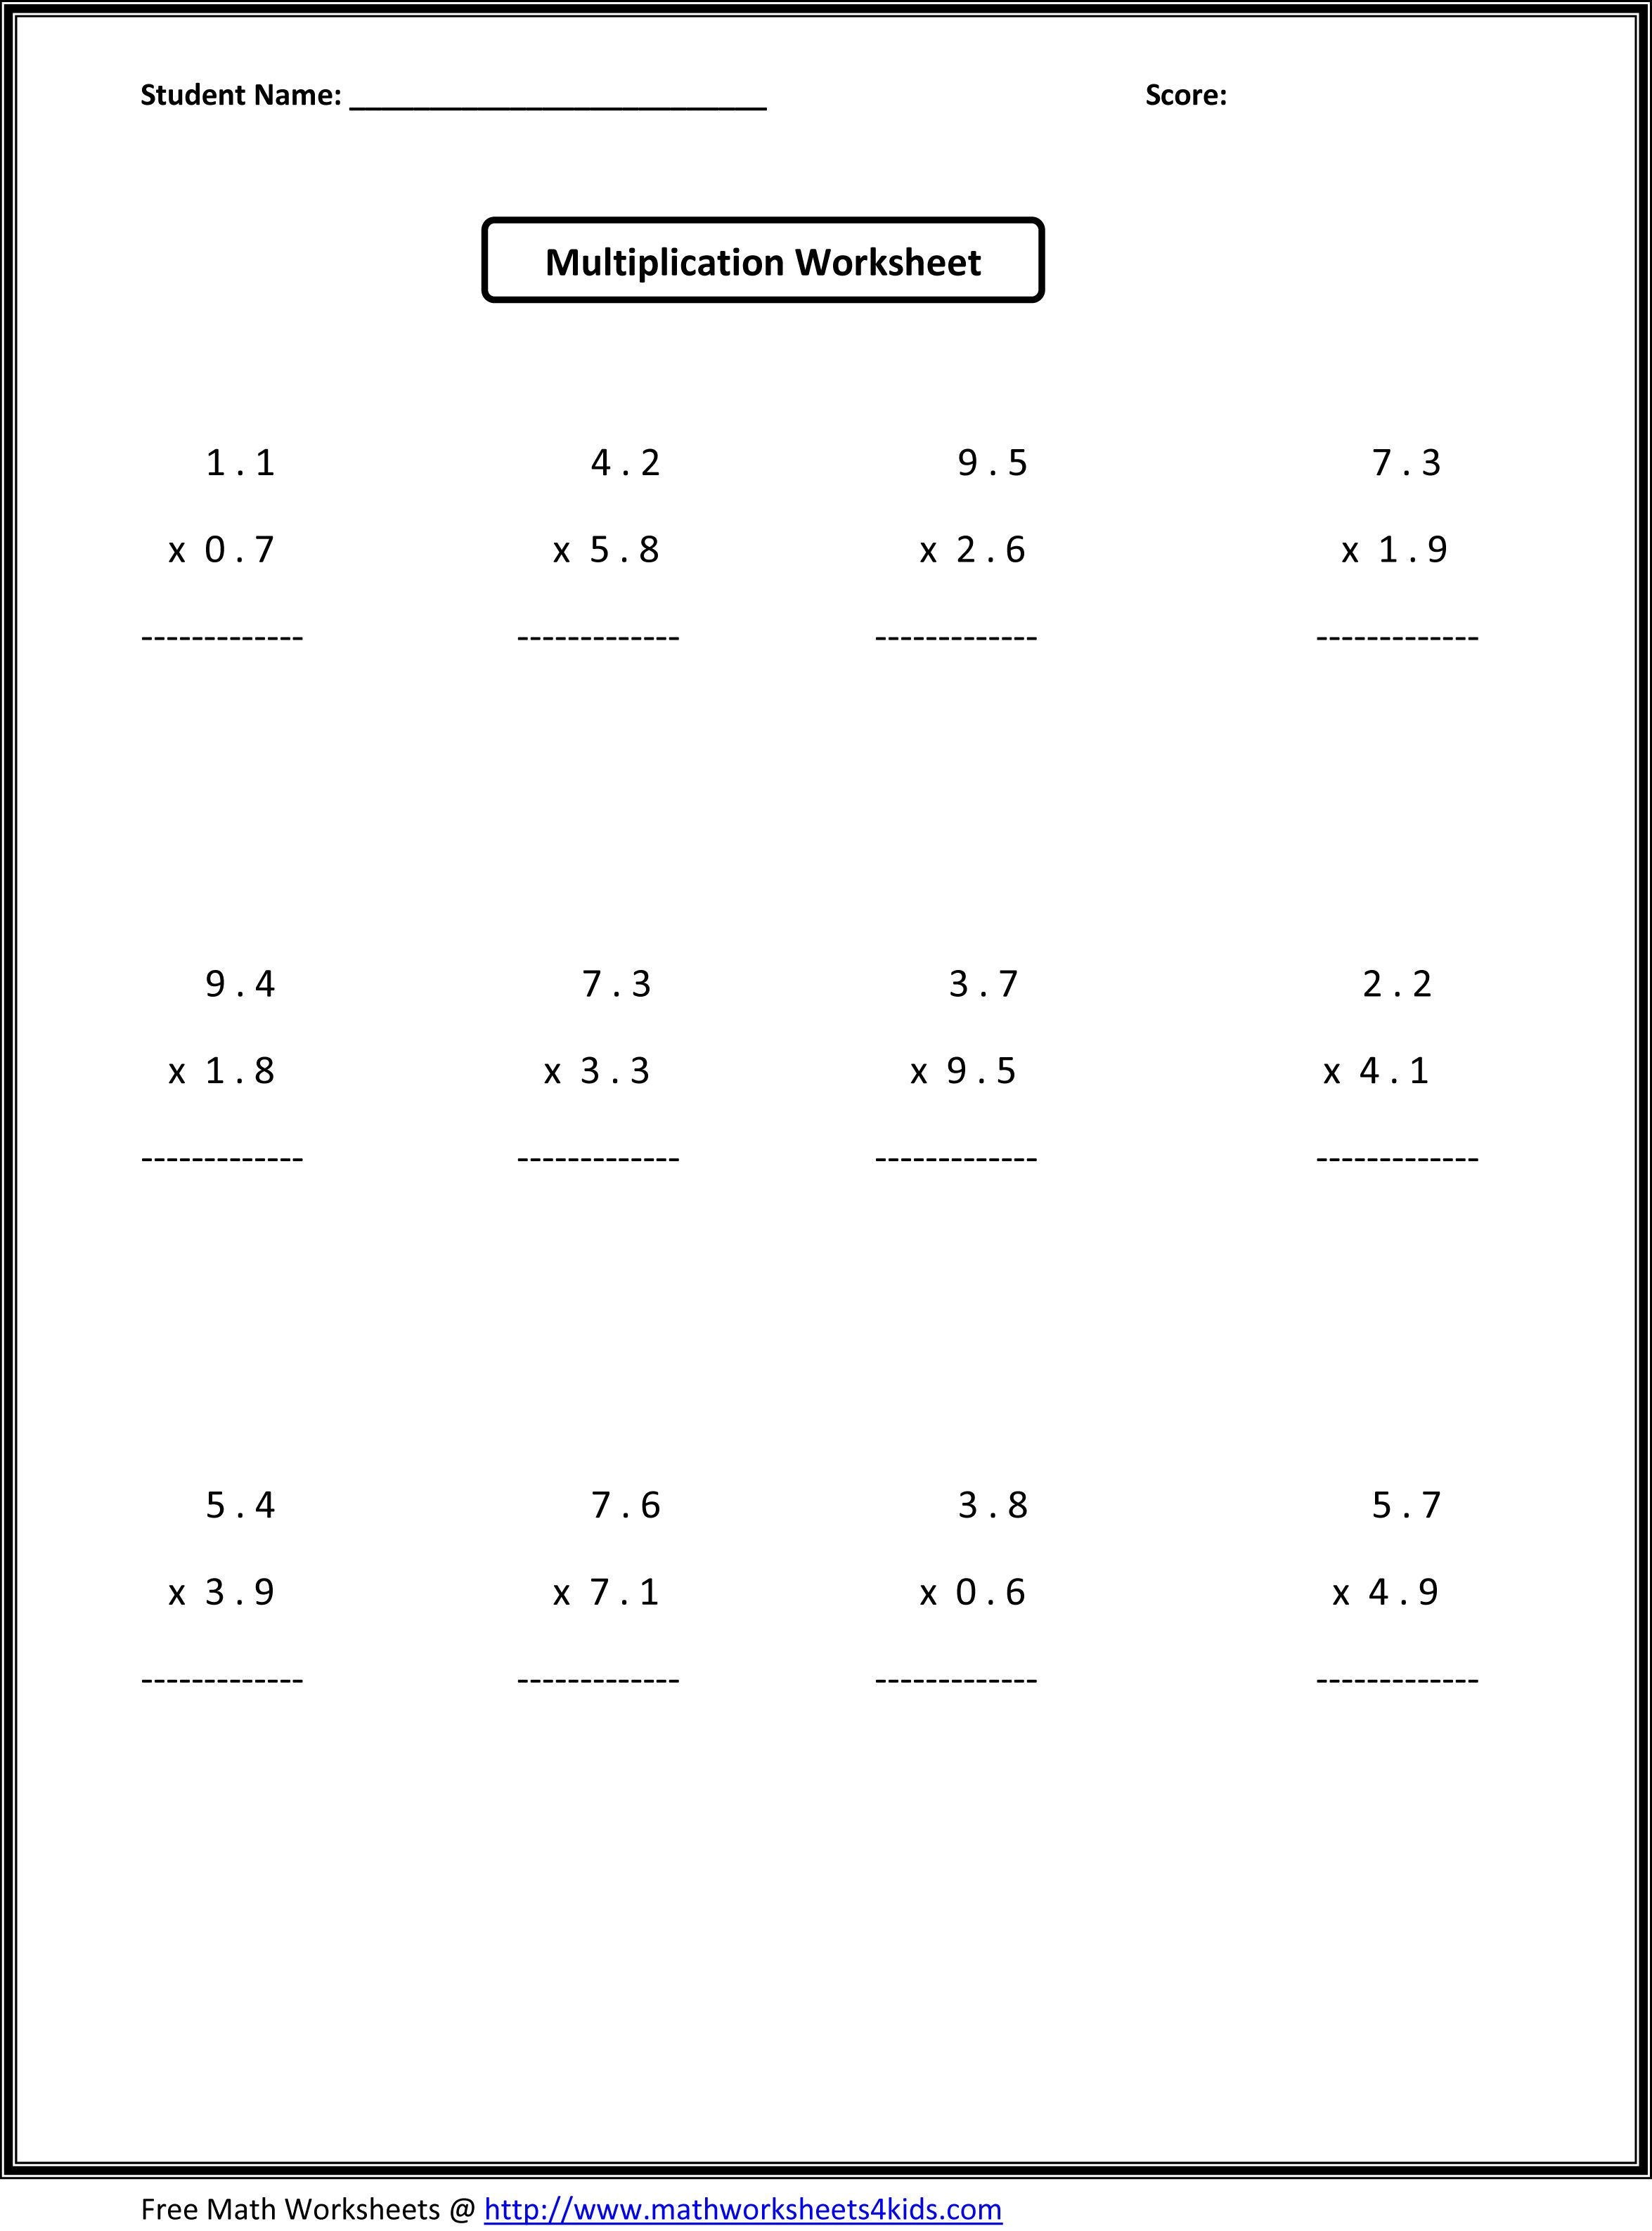 7Th Grade Math Worksheets | Value Worksheets Absolute Value | 7Th Grade Math Worksheets Printable